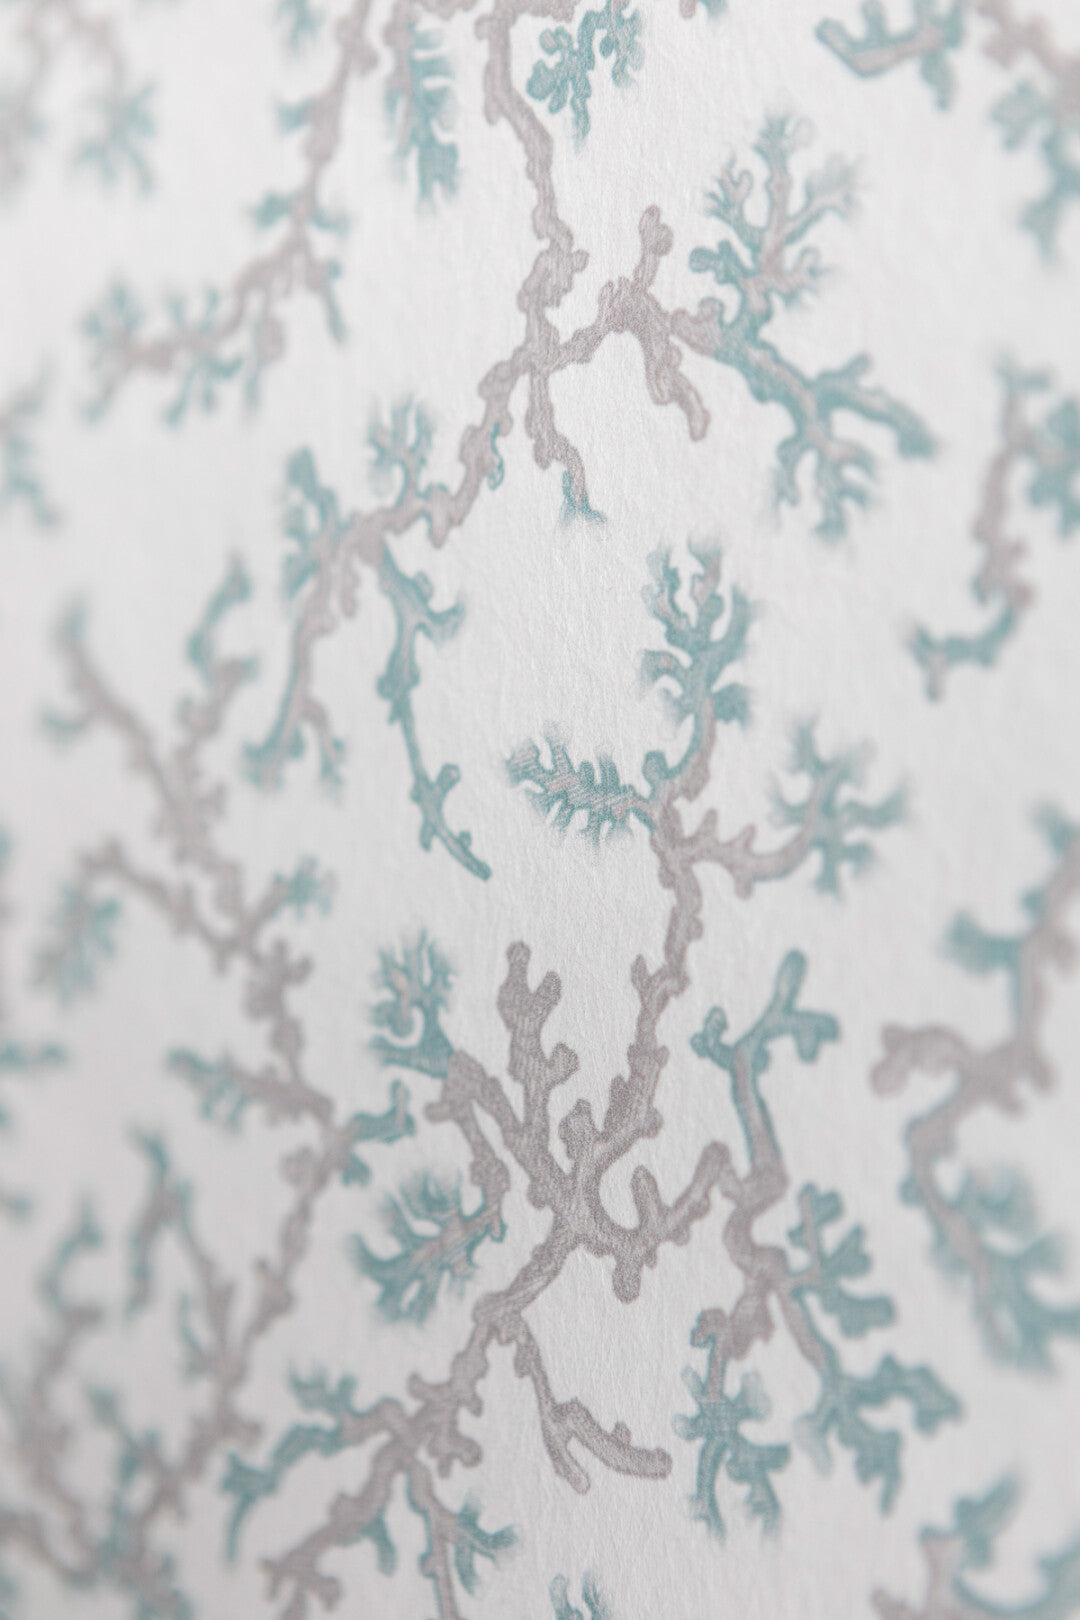 Fine Coral Room Wallpaper 2 - White